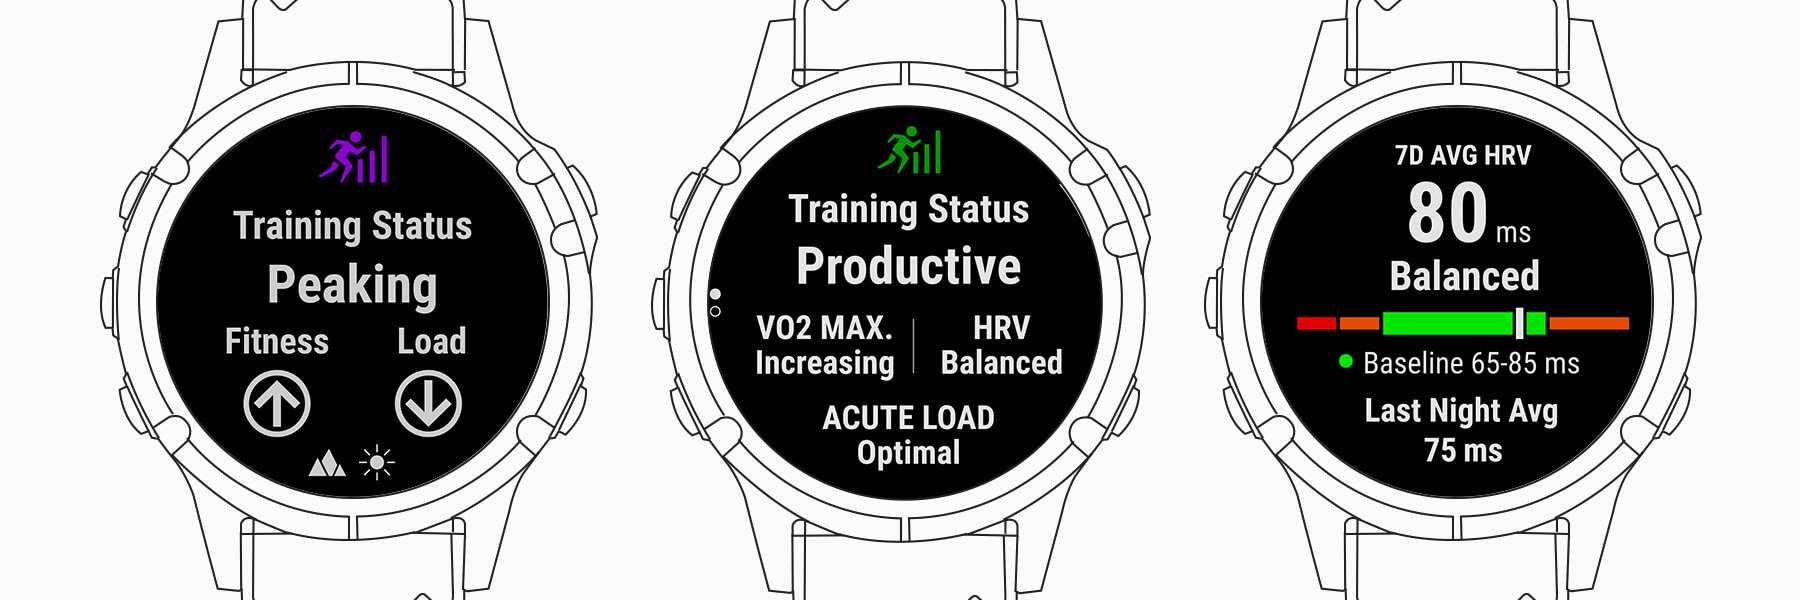 Unified Training Status ویژگی جدید ساعت های گارمین